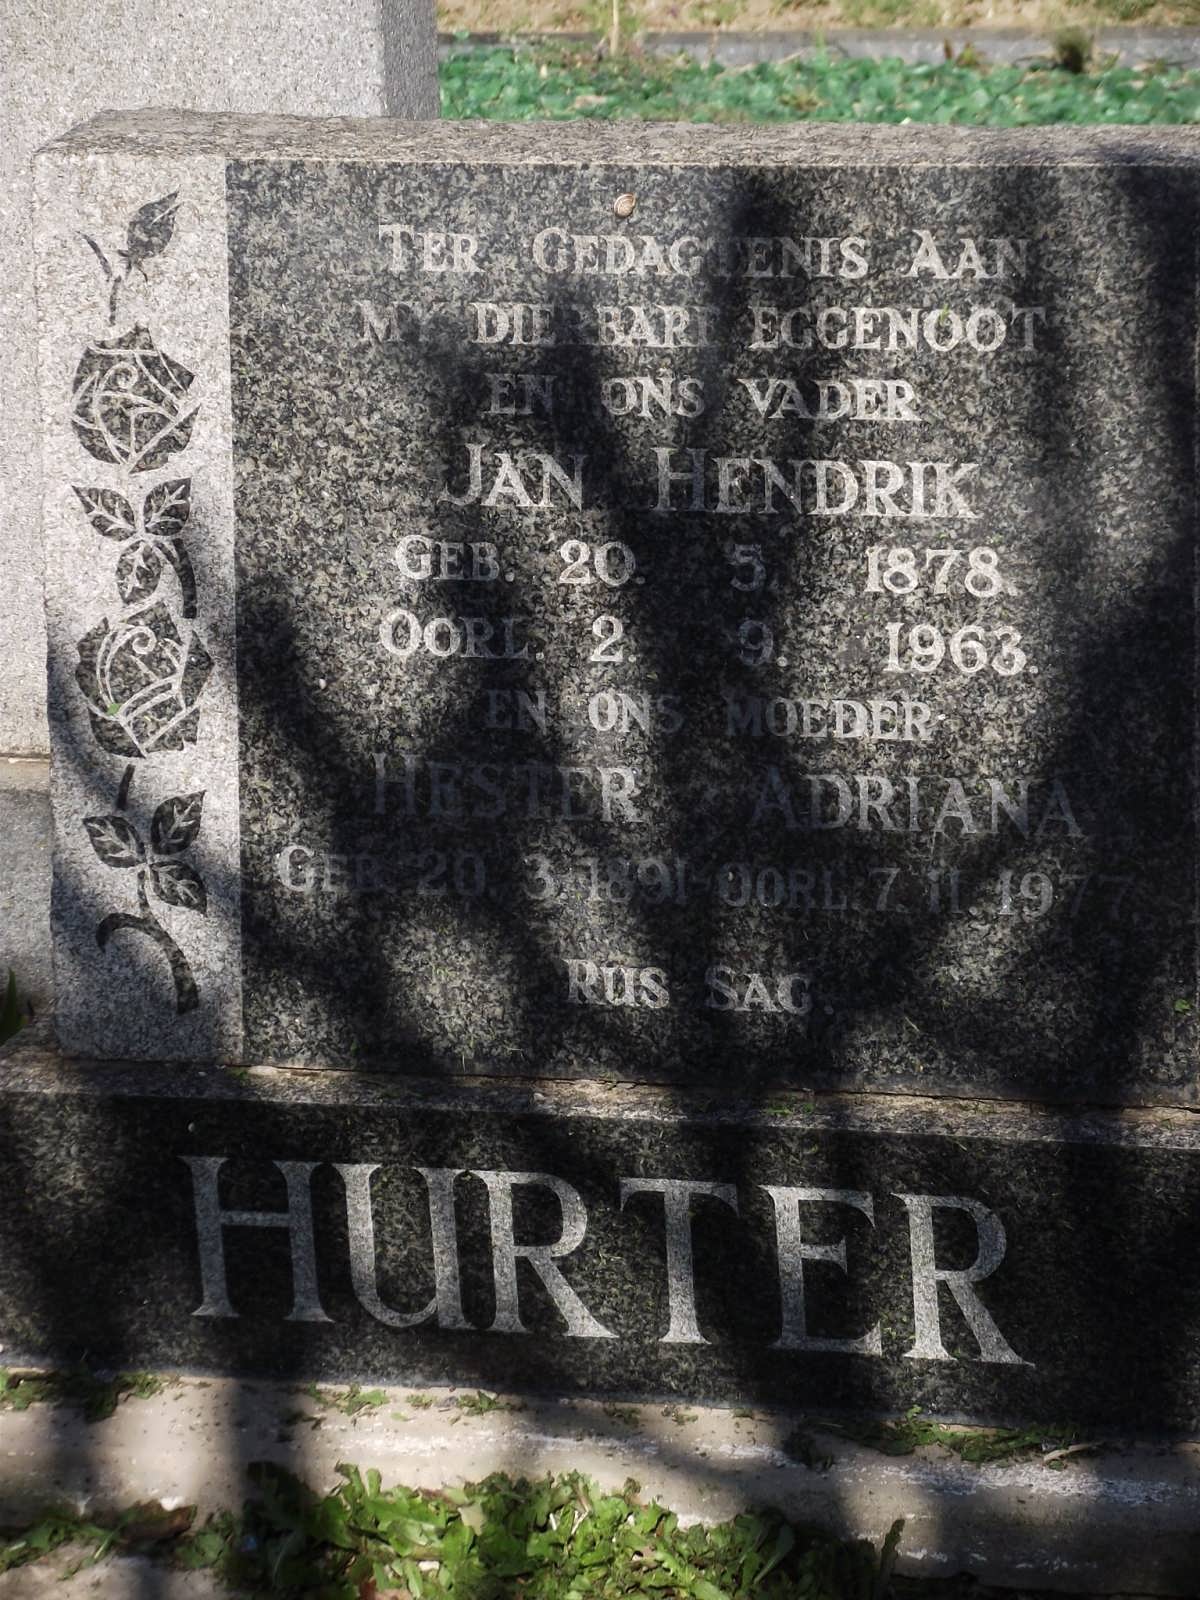 HURTER Jan Hendrik 1878-1963 & Hester Adriana 1891-1977